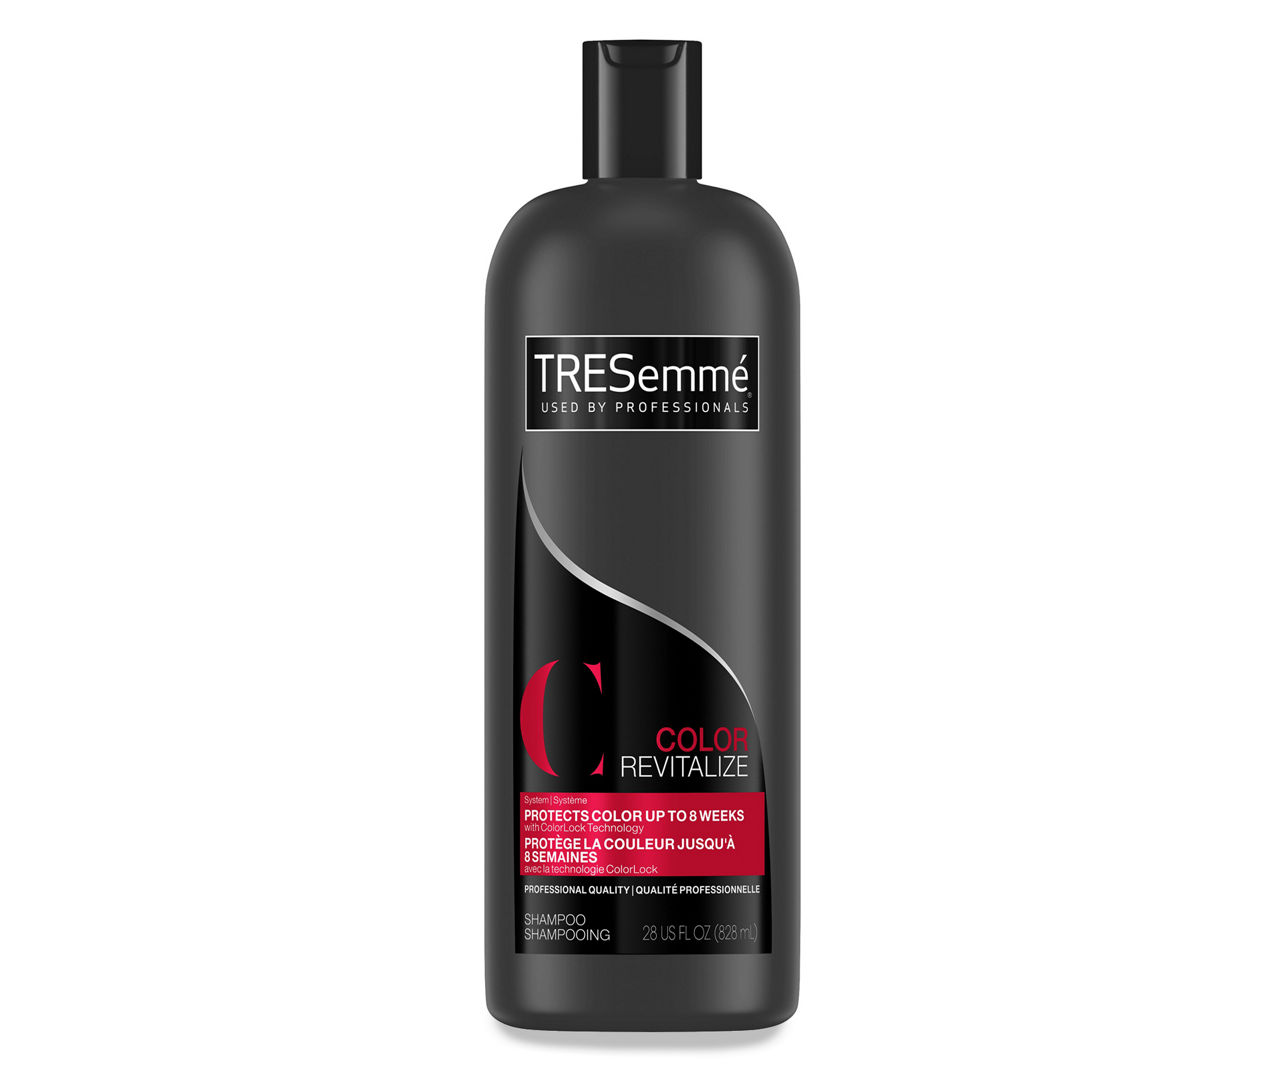 Knop Hold sammen med i tilfælde af Tresemme TRESemmé Color Revitalize Shampoo 28 oz | Big Lots